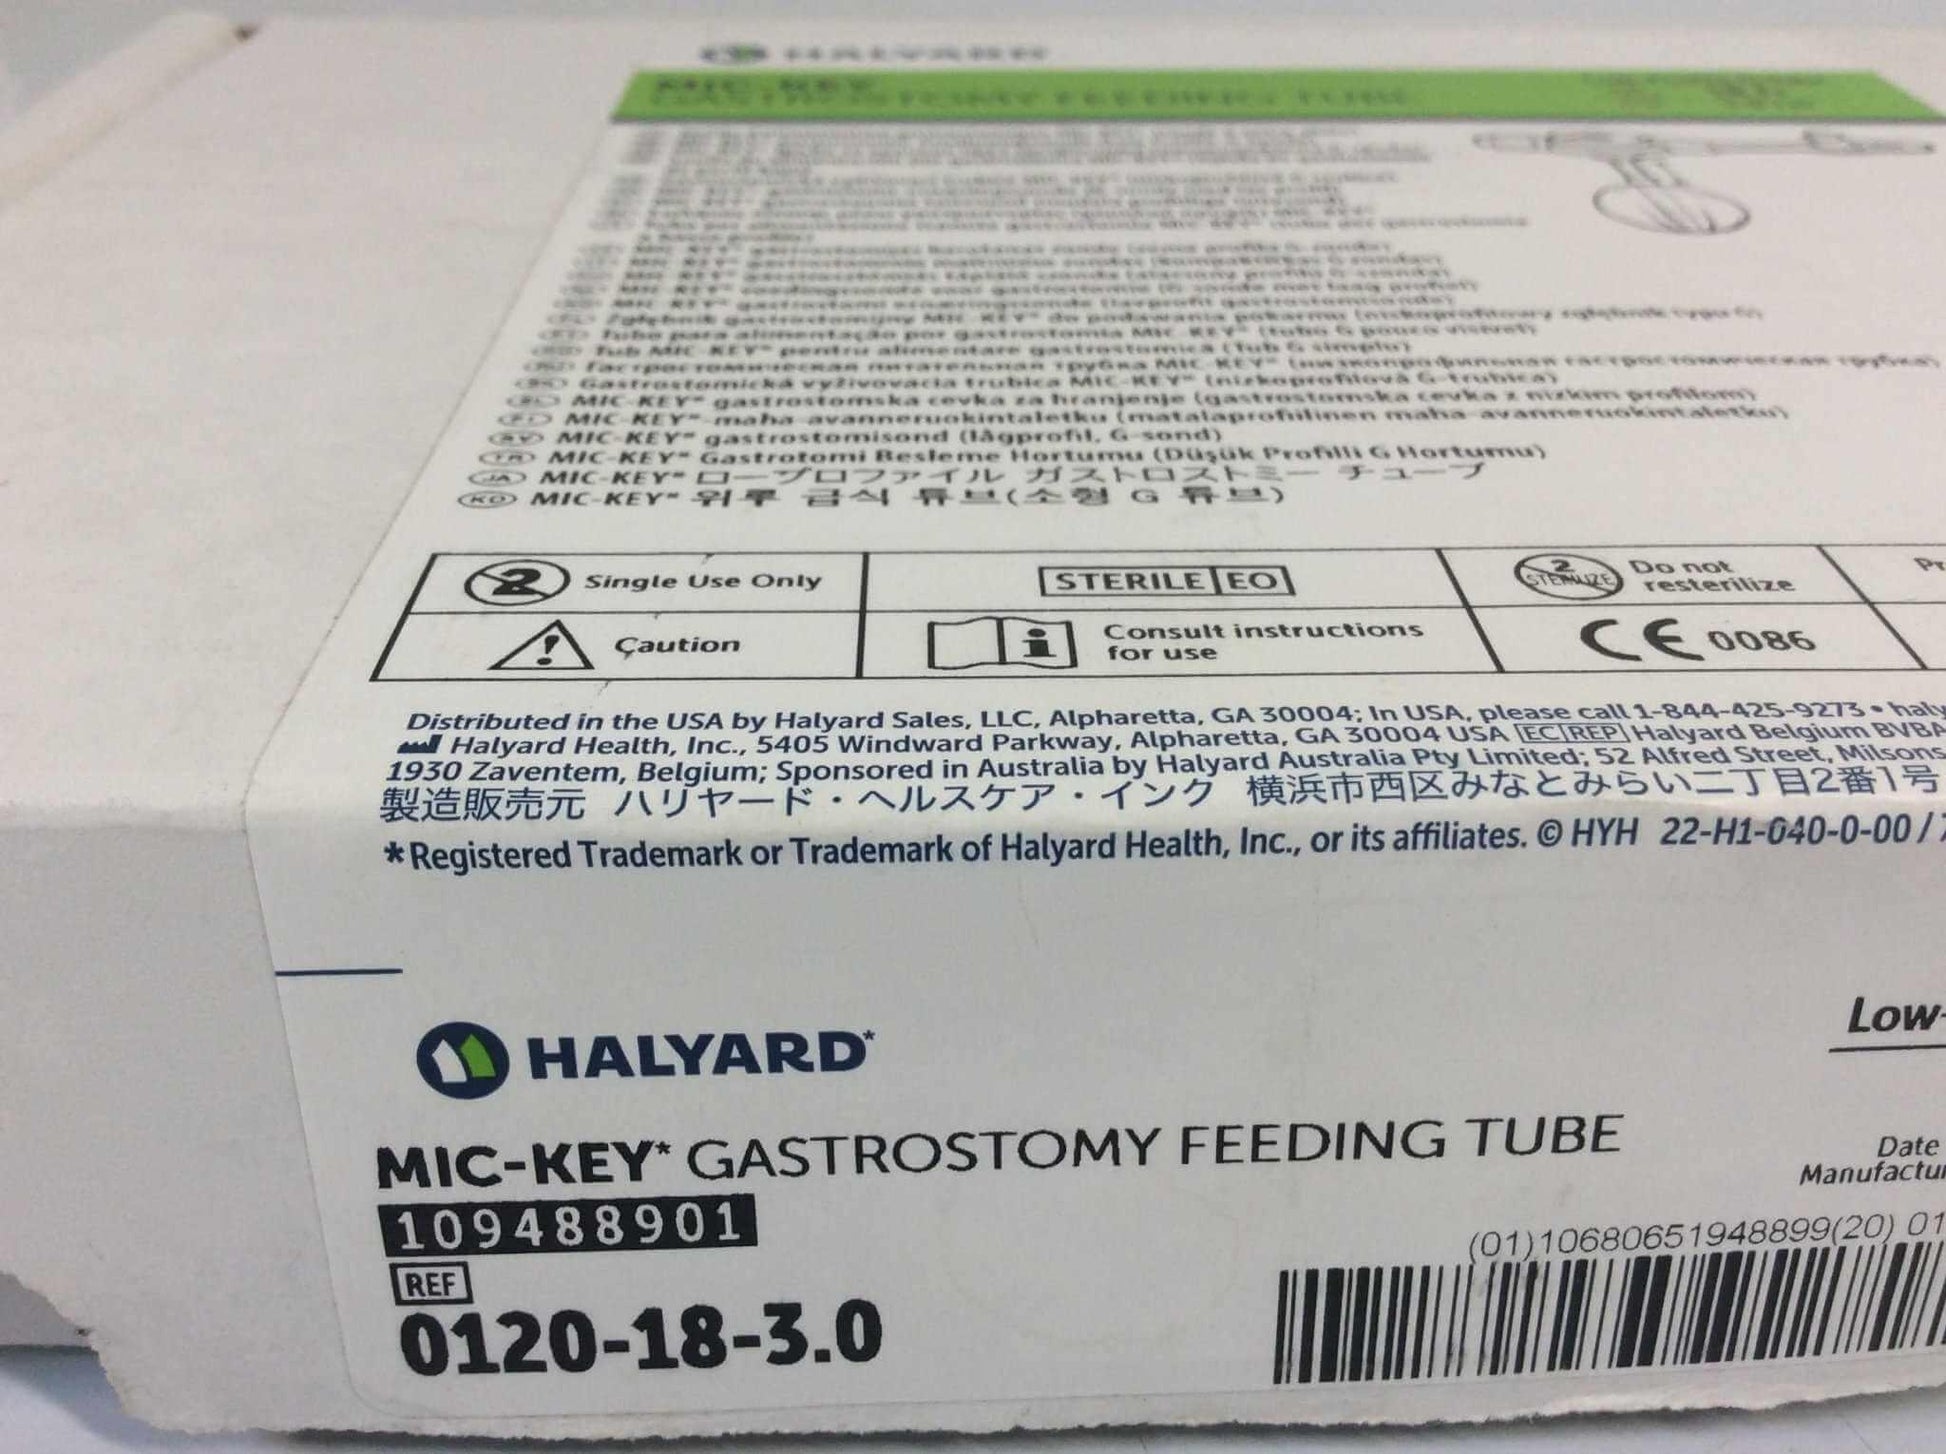 NEW Halyard MIC-KEY Gastrostomy Feeding Tube 18 Fr 0120-18-3.0 FREE Shipping - MBR Medicals